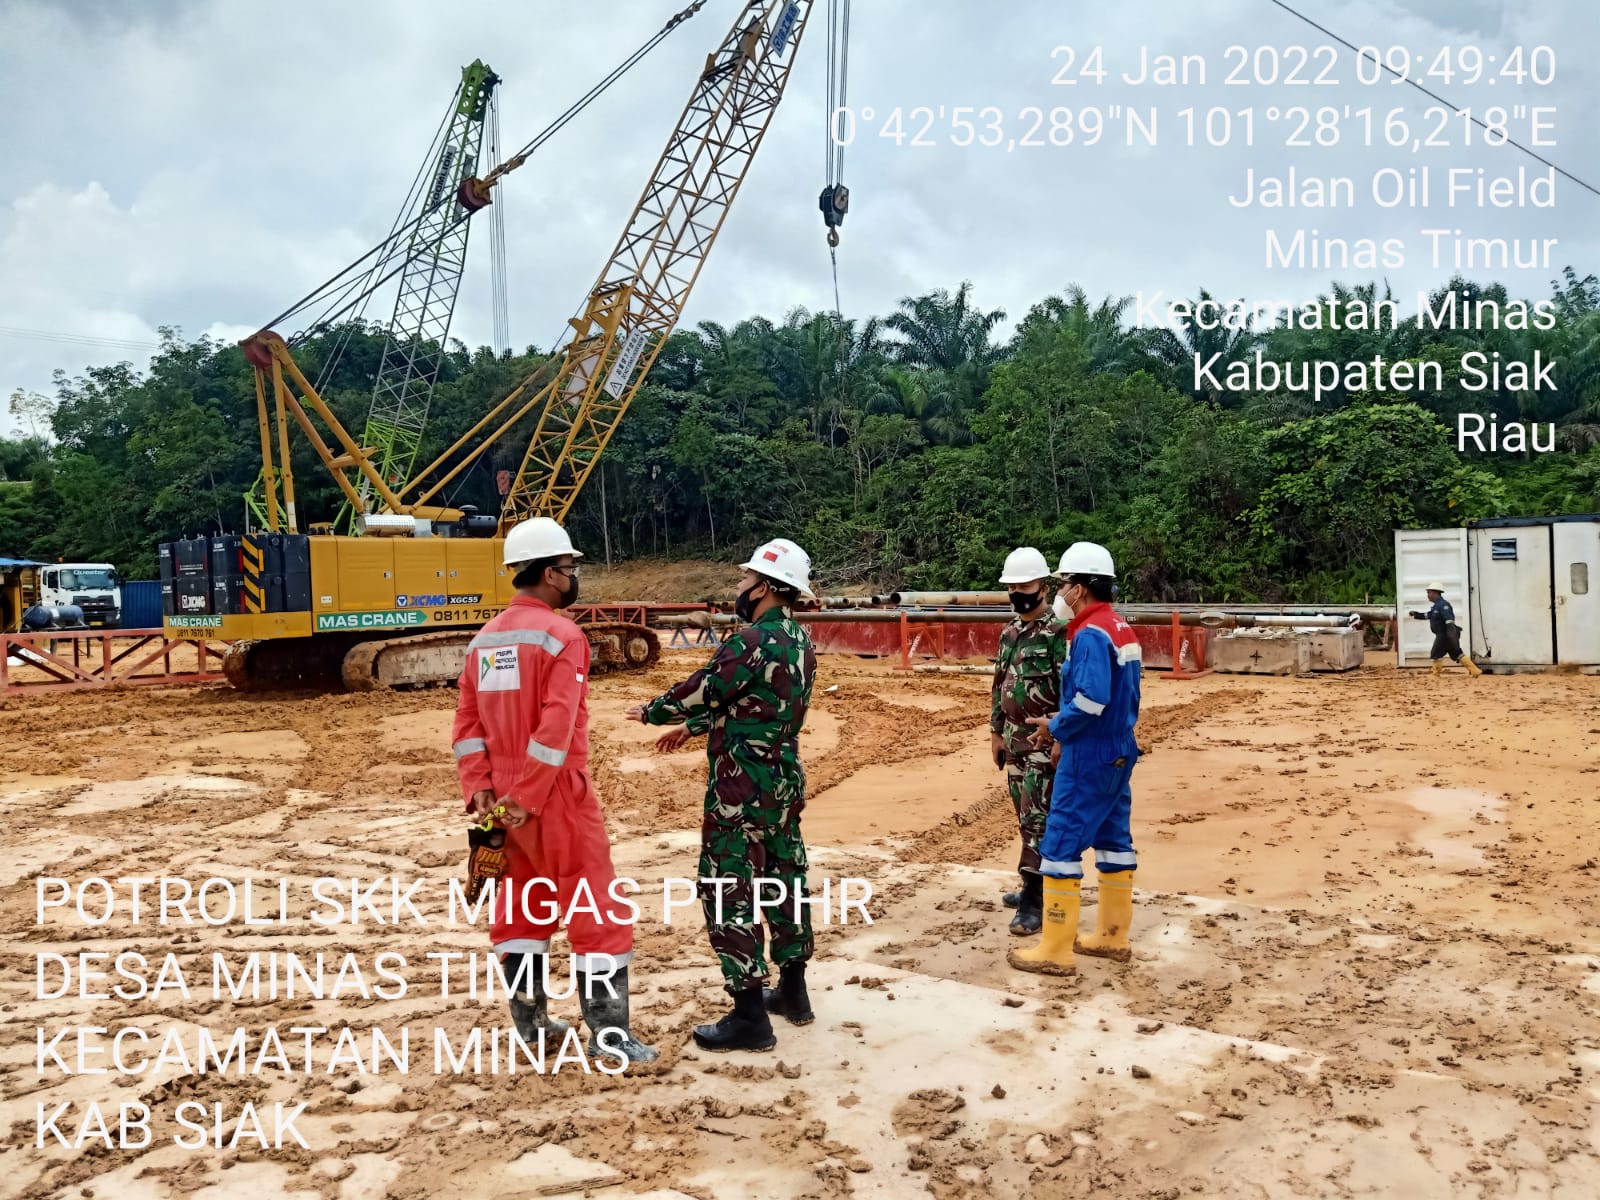 Serka Alif & Sejumlah Anggota Koramil 03/Minas Berikan Keamanan Untuk OVN Giat Patroli Drilling